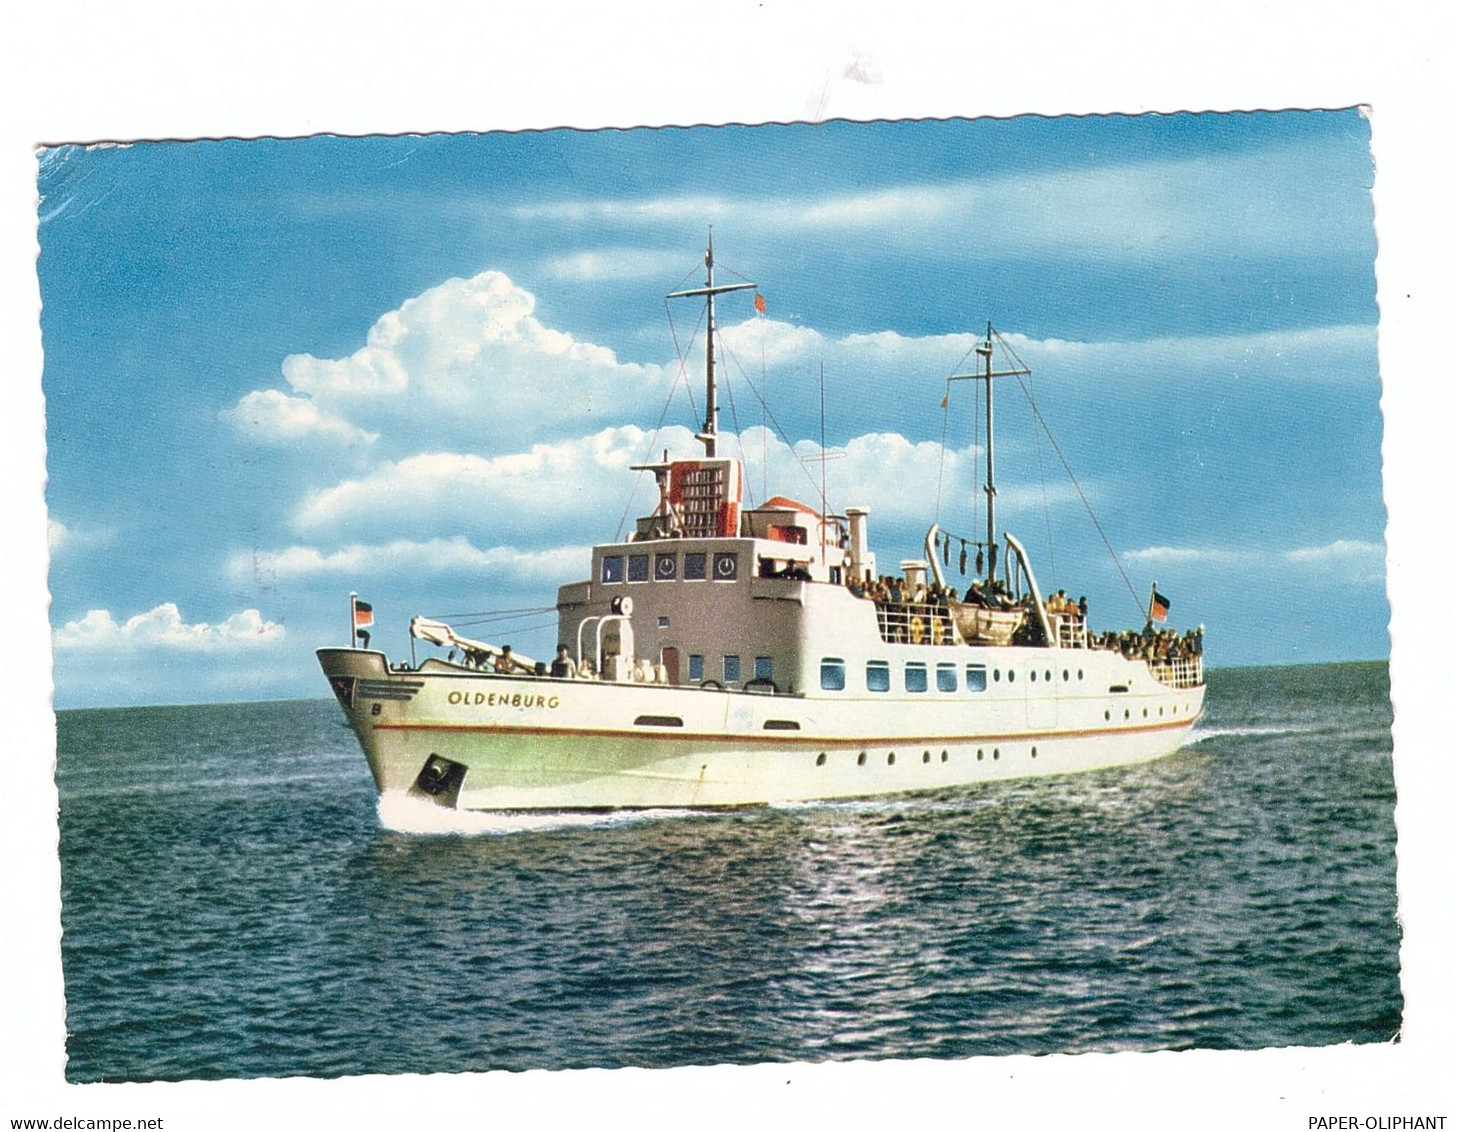 2946 WANGEROOGE, Fährschiff MS "OLDENBURG", 1964 - Wangerooge